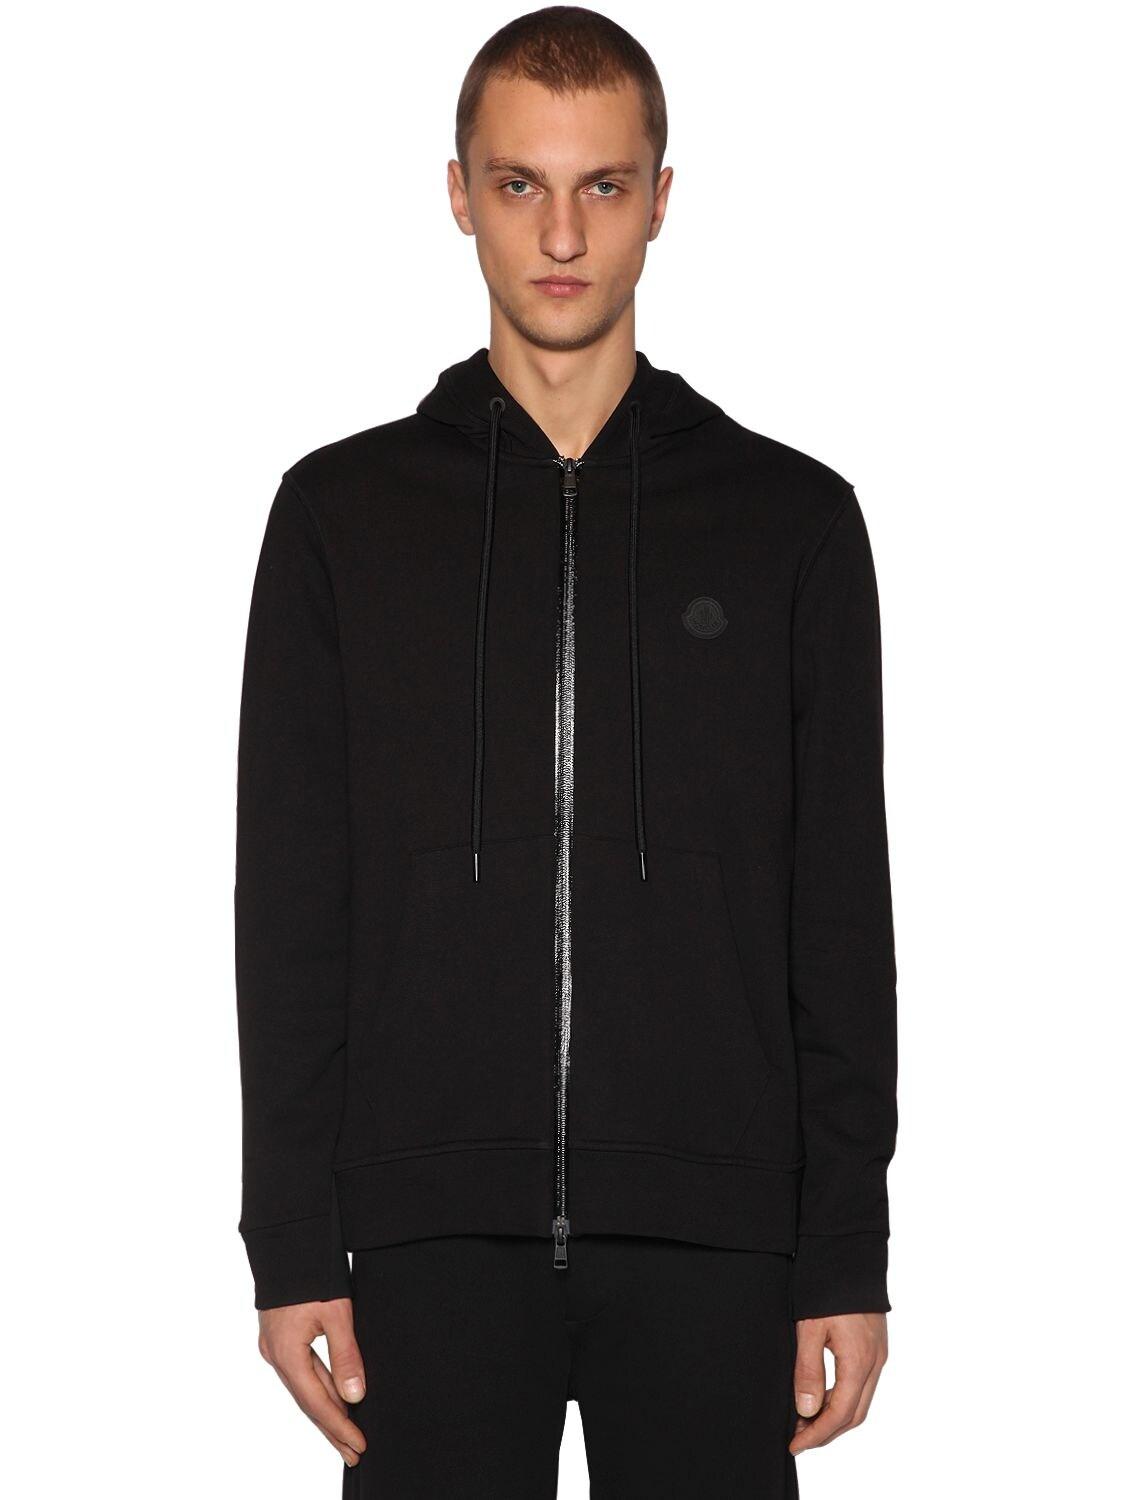 Moncler Cotton Jersey Zip-up Sweatshirt Hoodie in Black for Men - Lyst